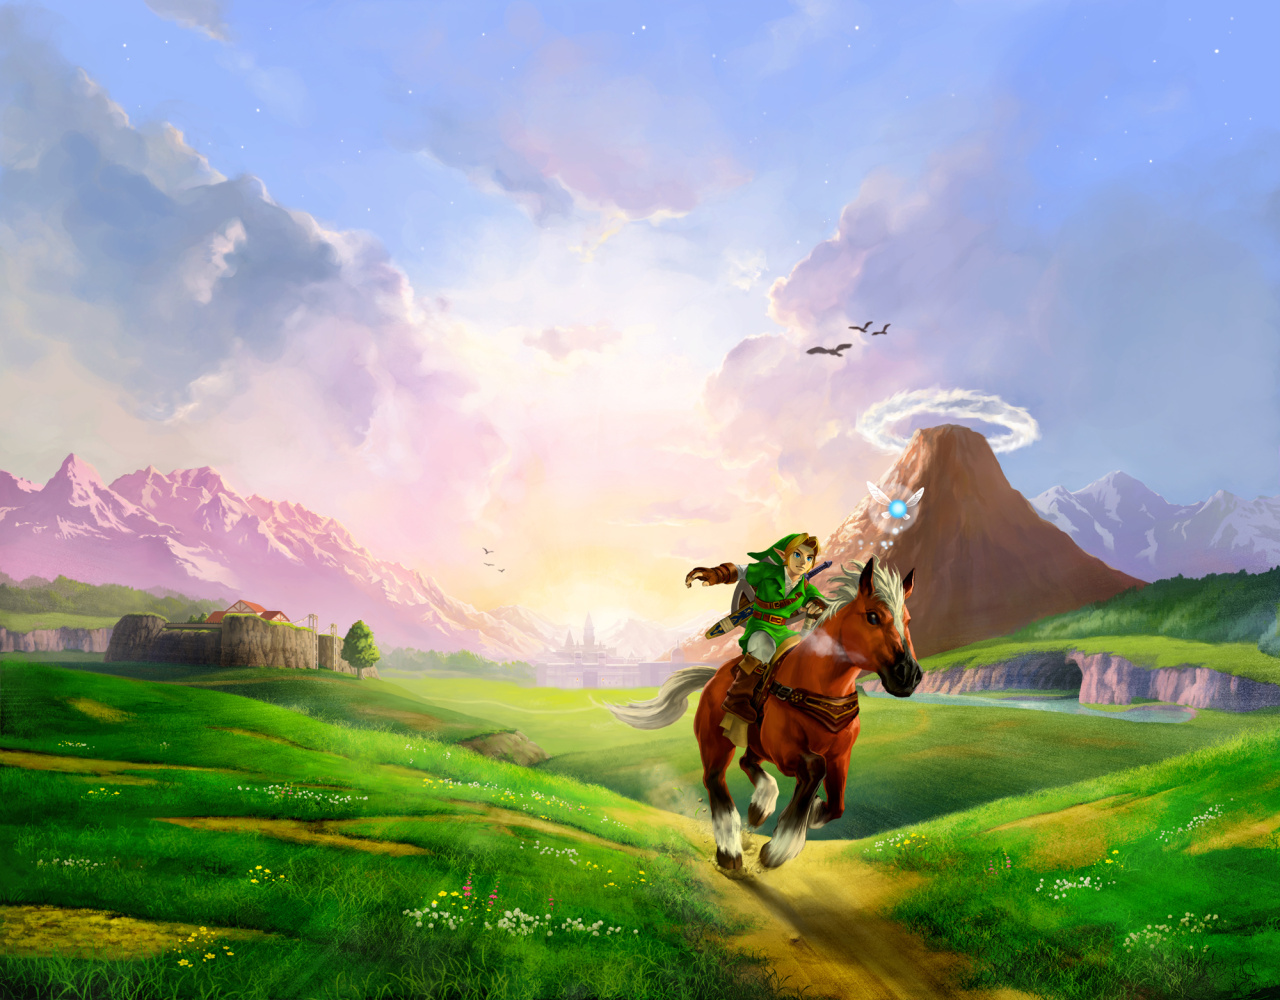 The Best Hyrule Fields in Zelda Games